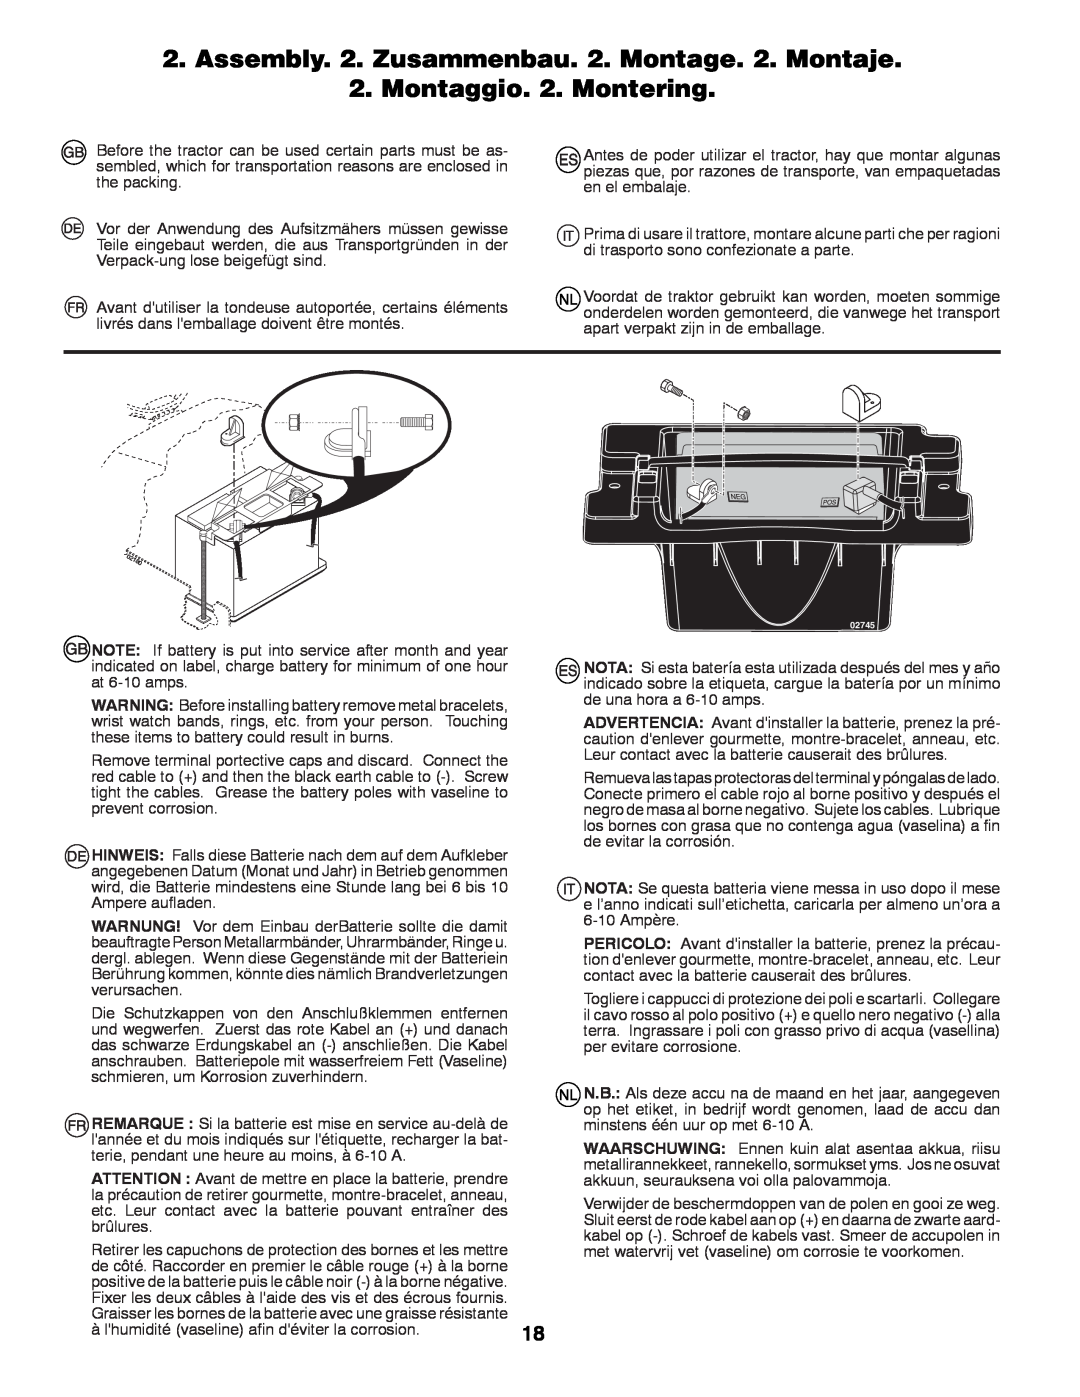 Husqvarna GTH260TWIN instruction manual Montaggio. 2. Montering 